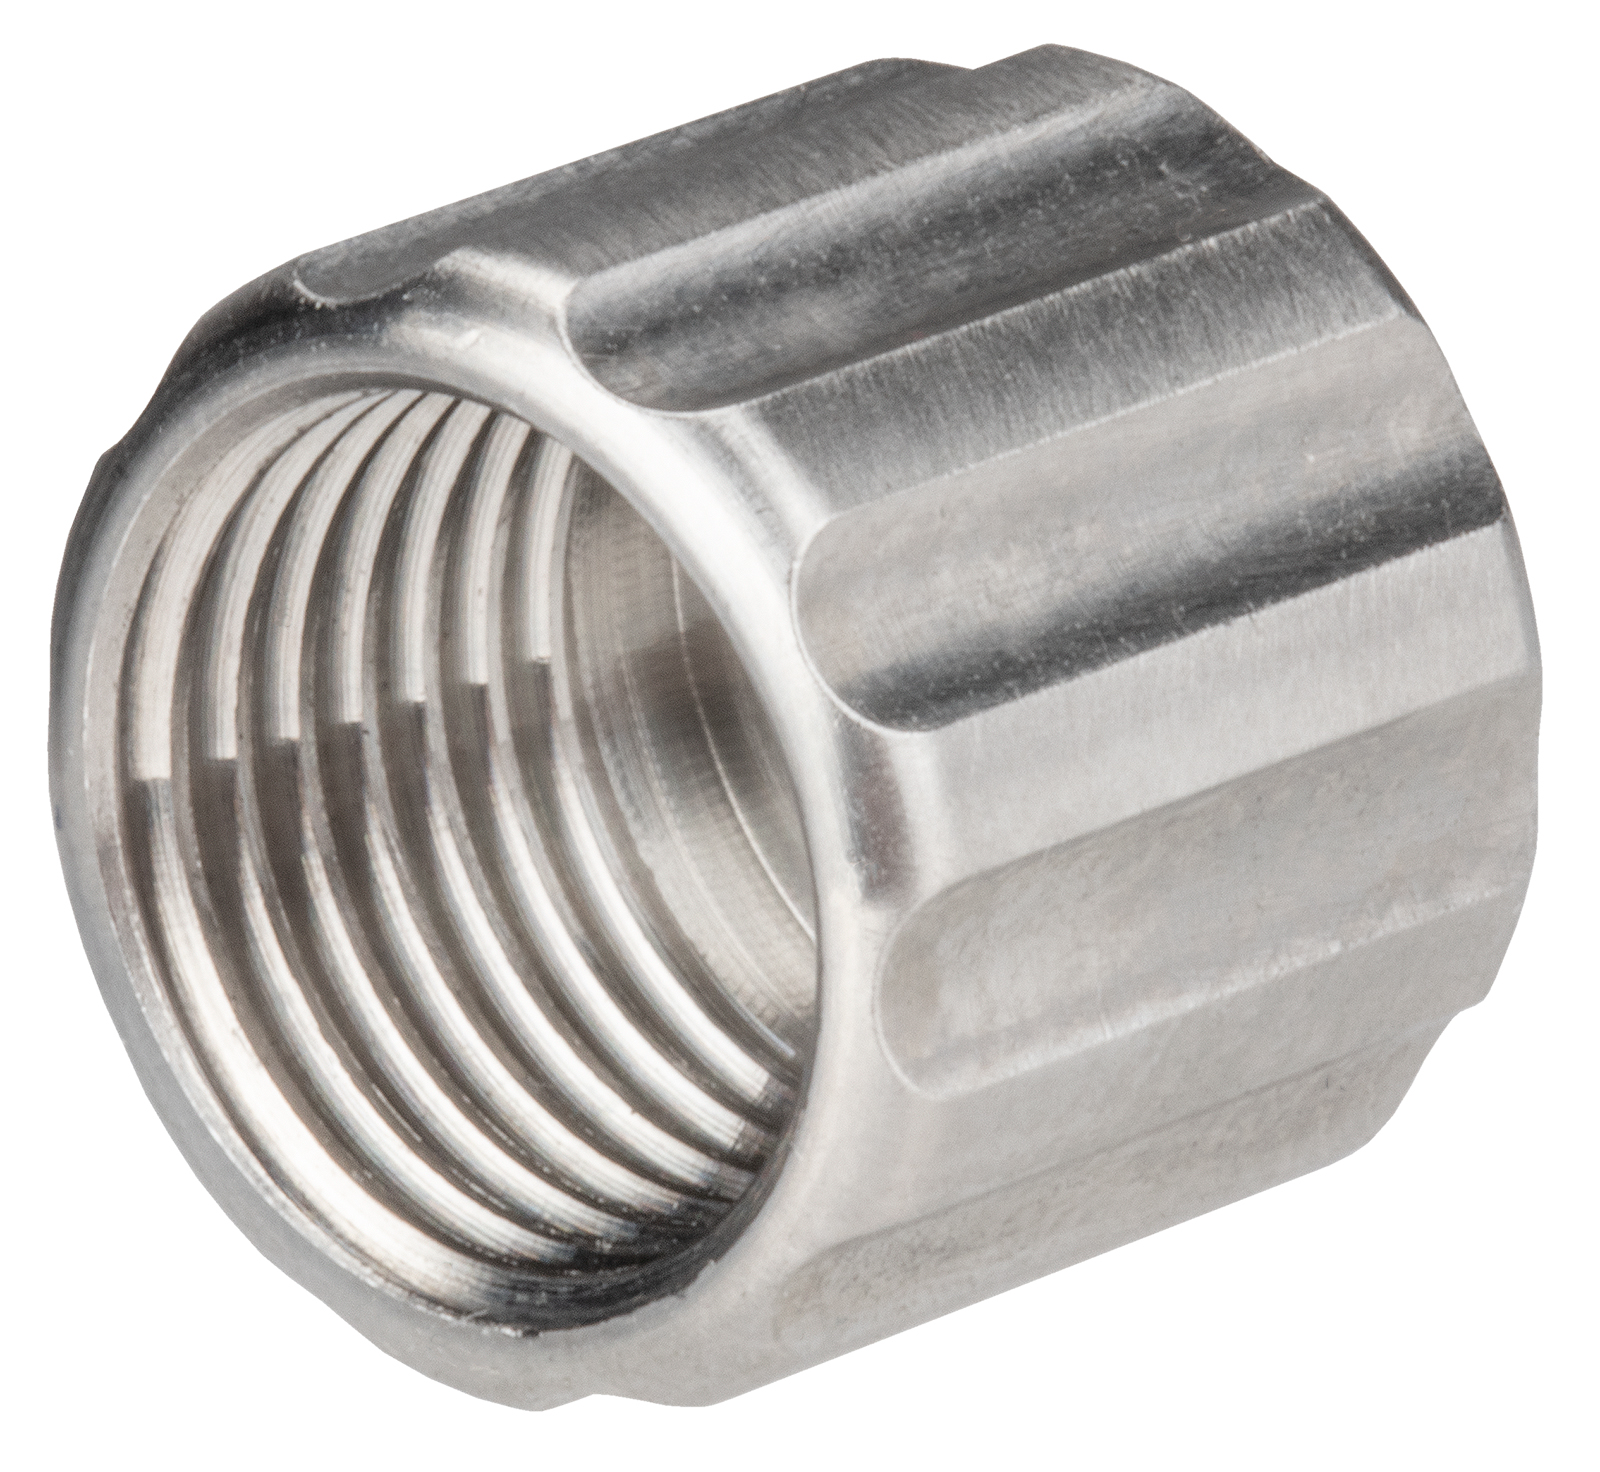 Union nut for valve body DV-5625-MED